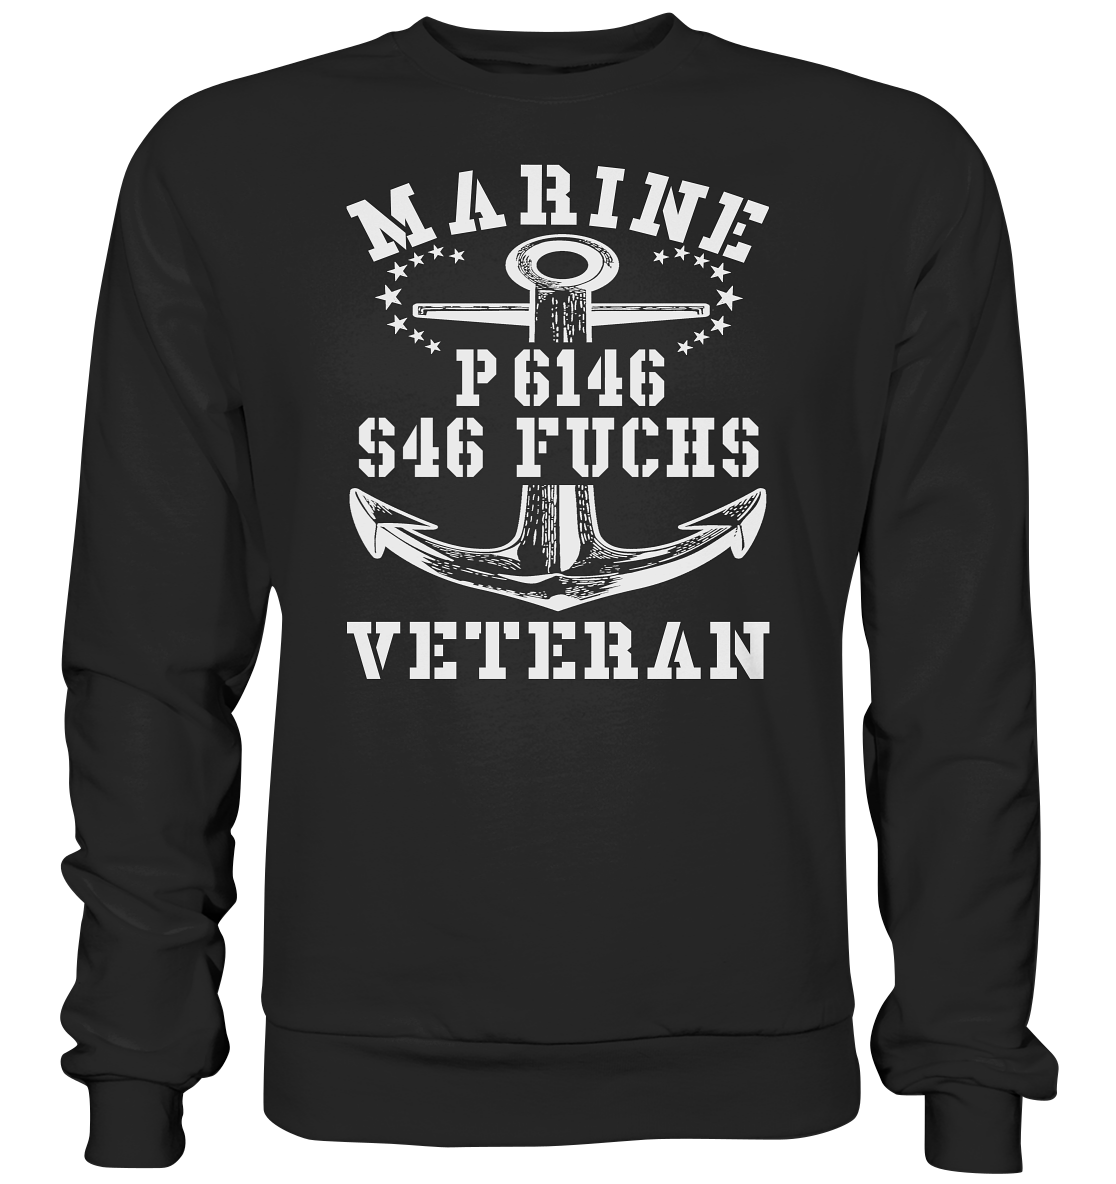 P6146 S46 FUCHS Marine Veteran - Premium Sweatshirt